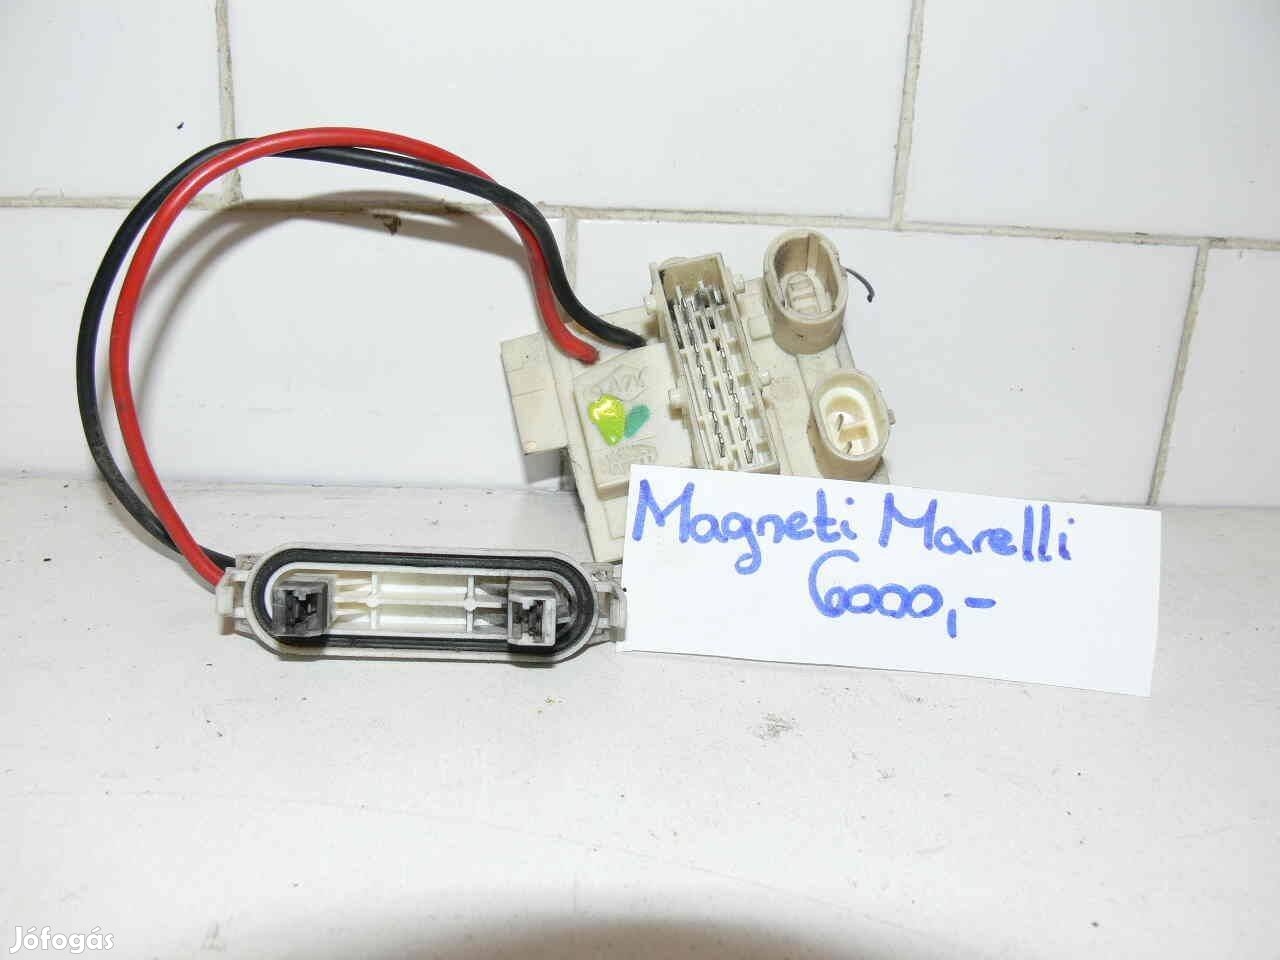 Magnet Marelli fűtőmotor ellenállás